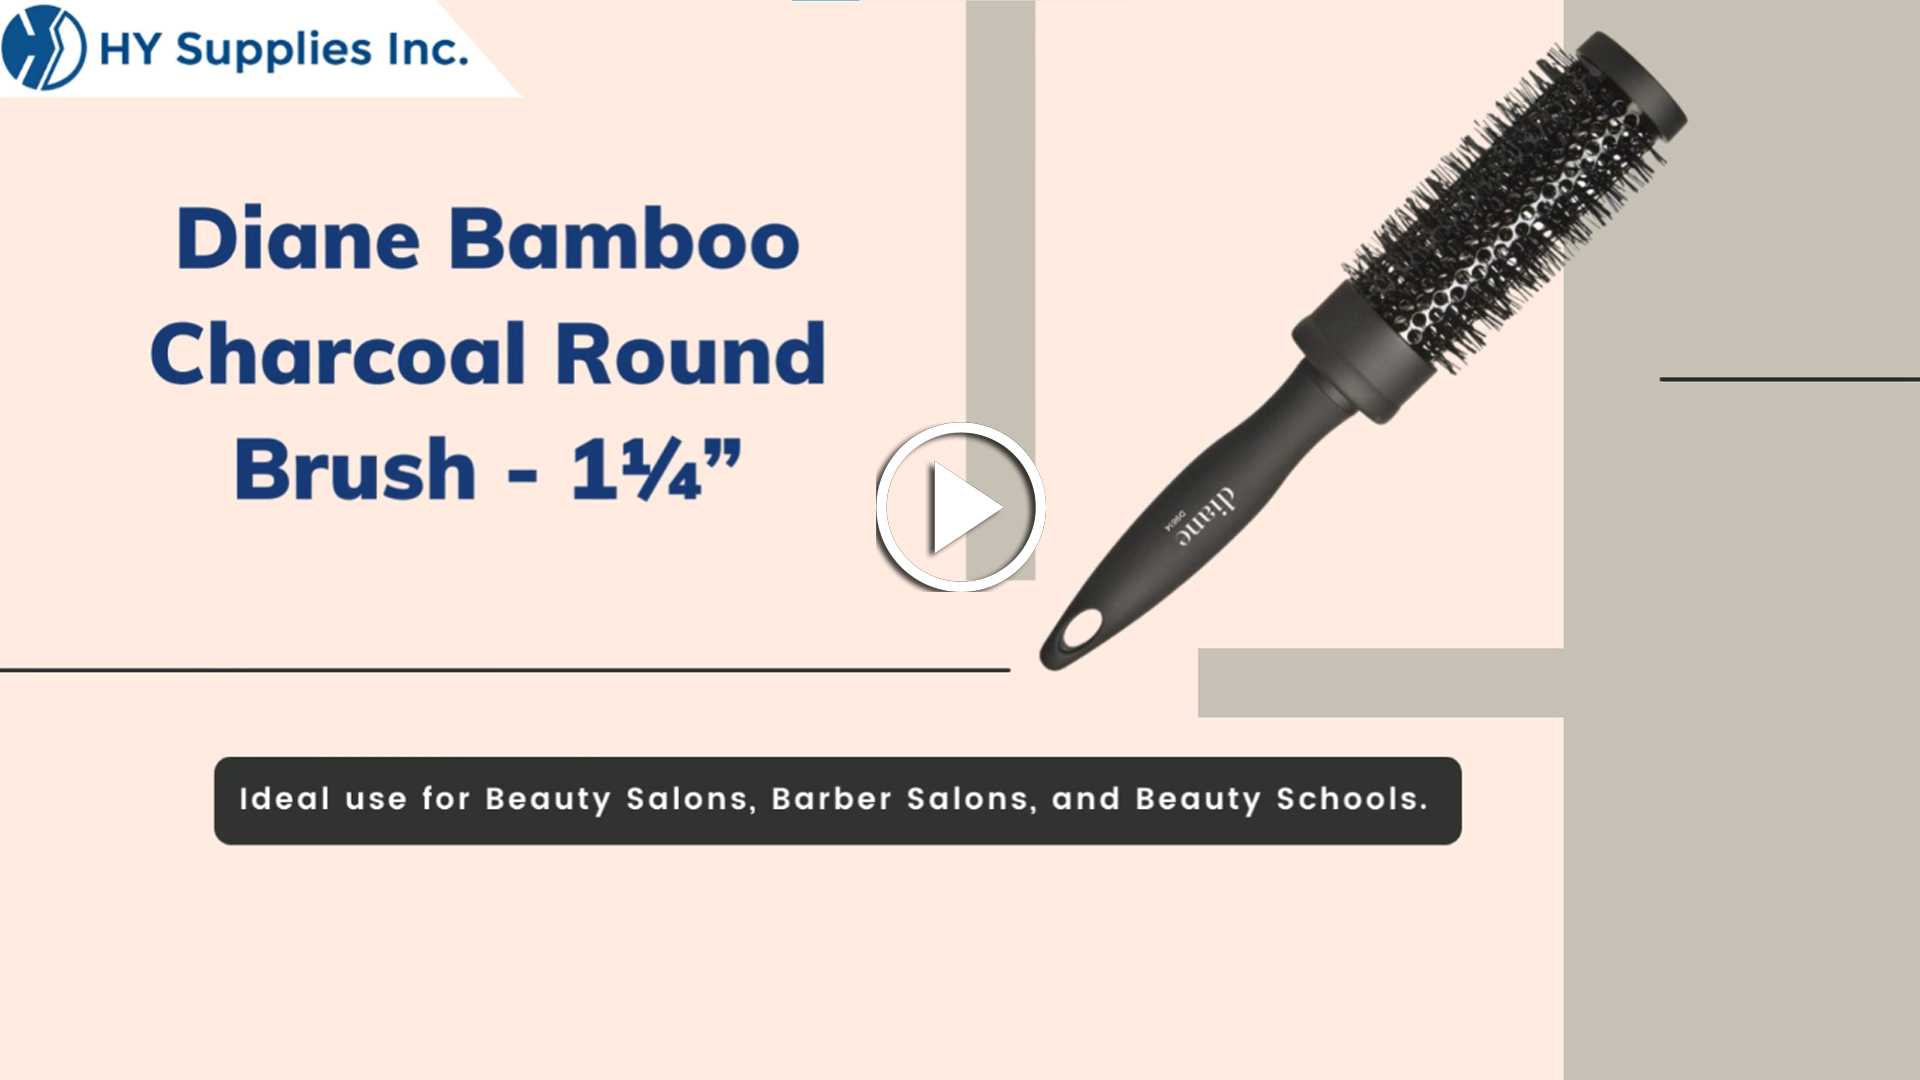 Diane Bamboo Charcoal Round Brush - 1¼"